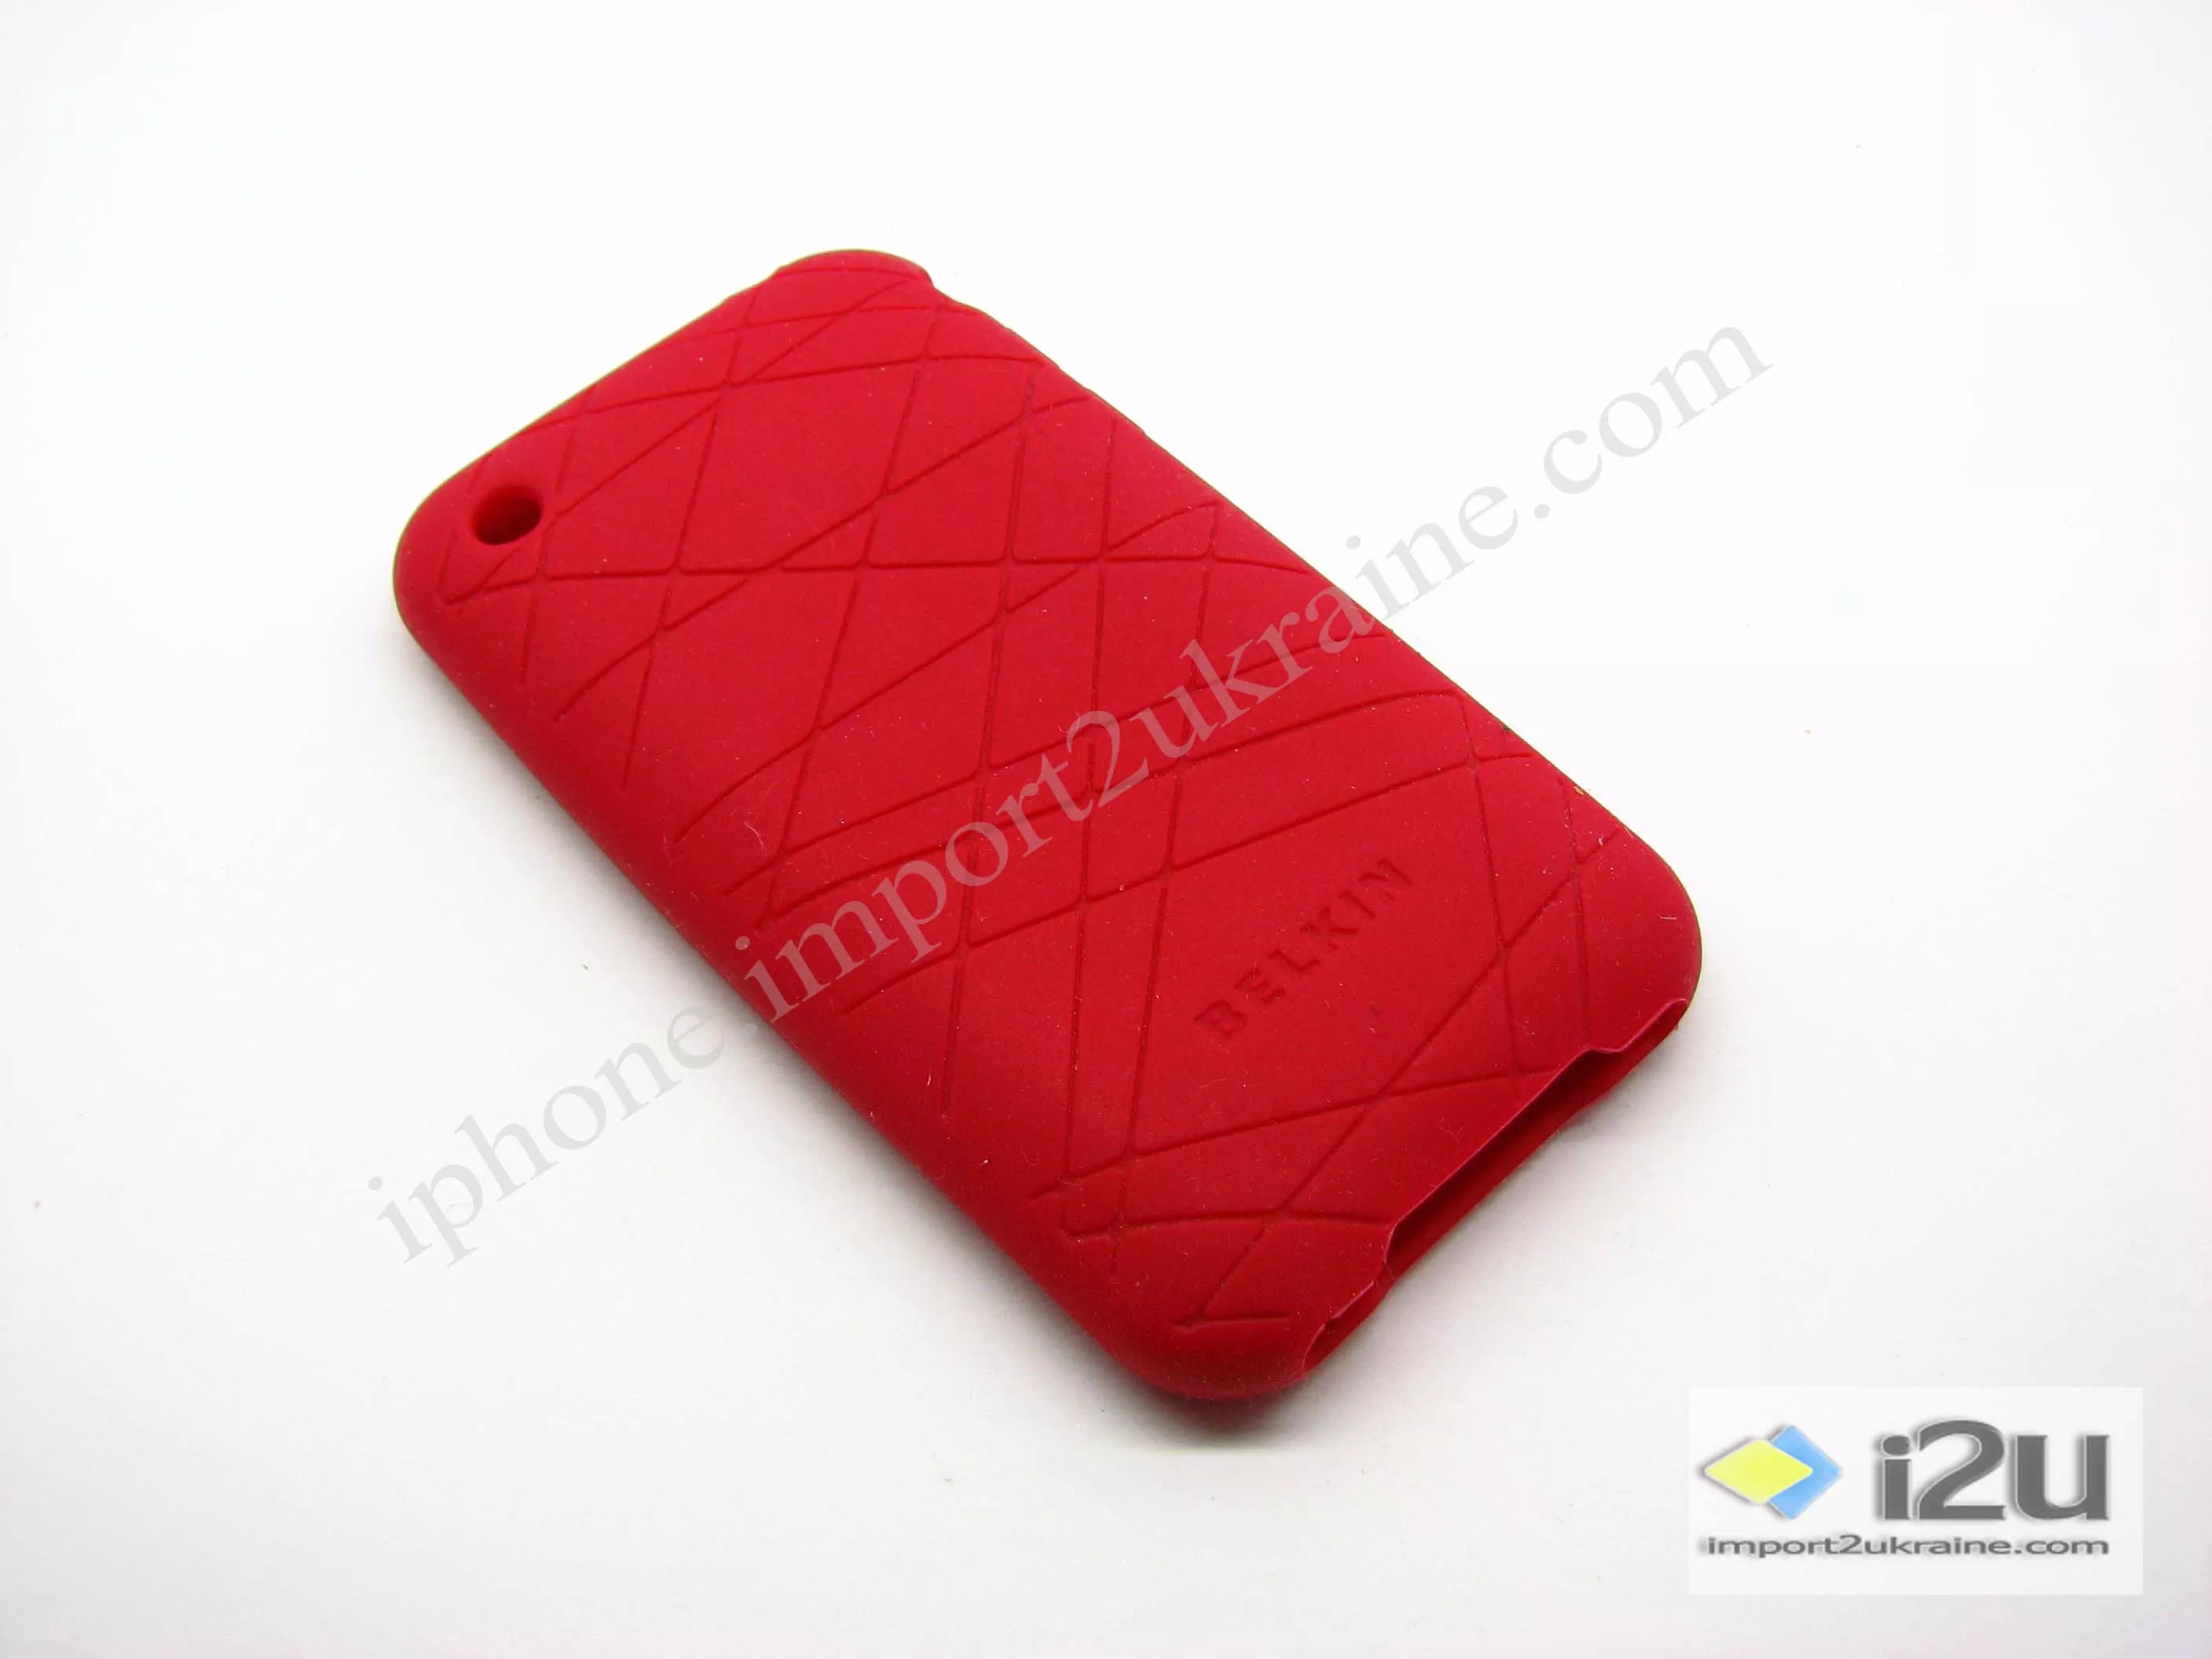 Защитный силиконовый чехол для задней крышки iPhone - Belkin, красный цвет